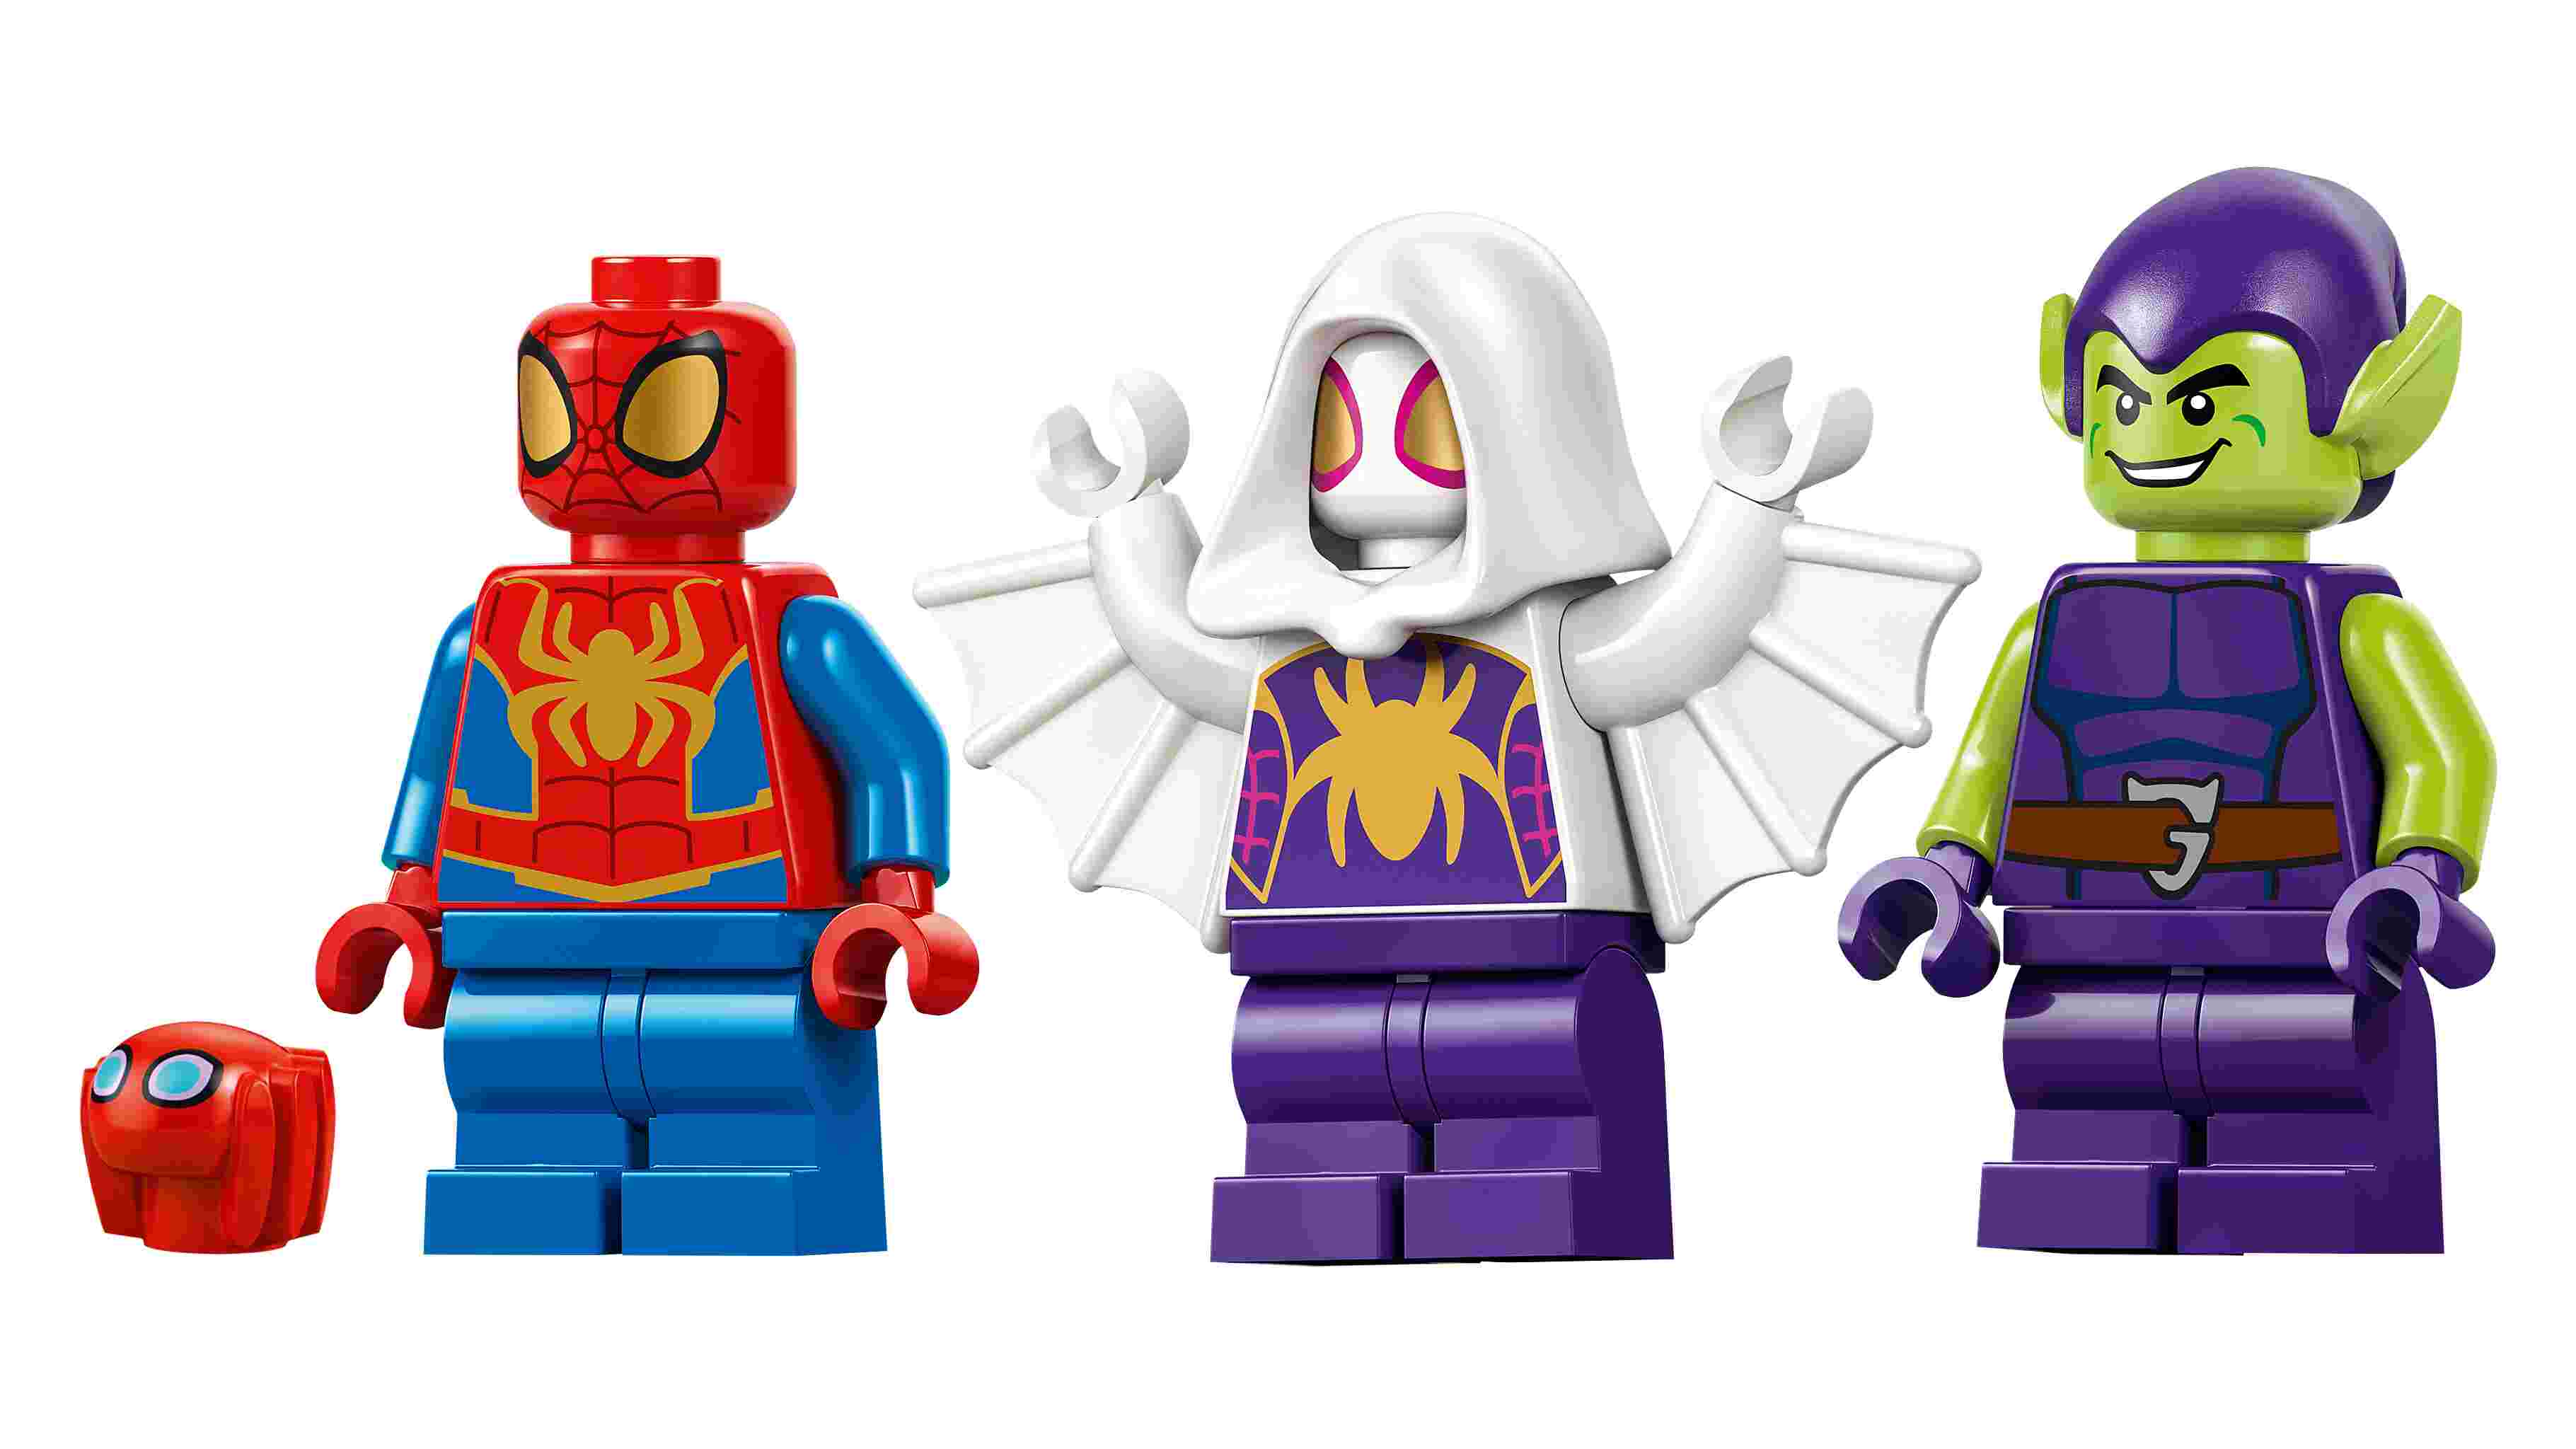 LEGO 10793 Marvel Spidey vs. Green Goblin, Spidey, Green Goblin und Ghost-Spider